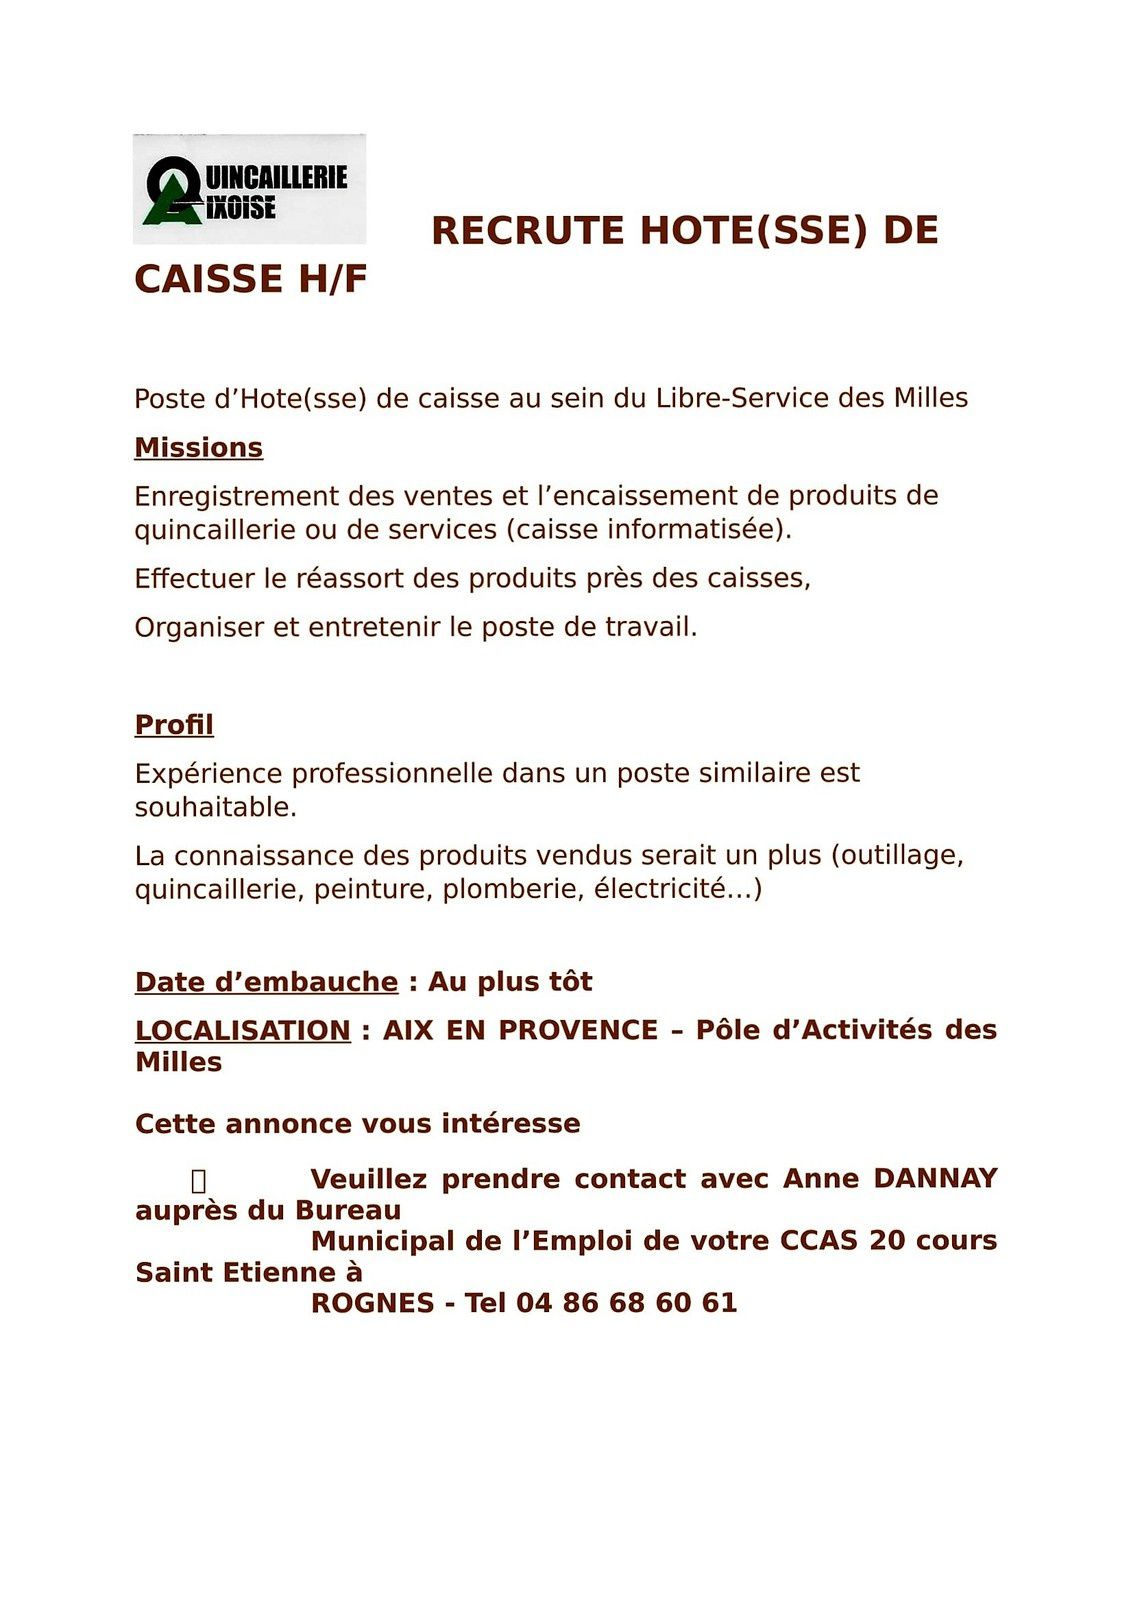 QUINCAILLERIE AIXOISE RECRUTE HOTE(SSE) DE CAISSE - Centre Communal  d'Action Sociale de Rognes